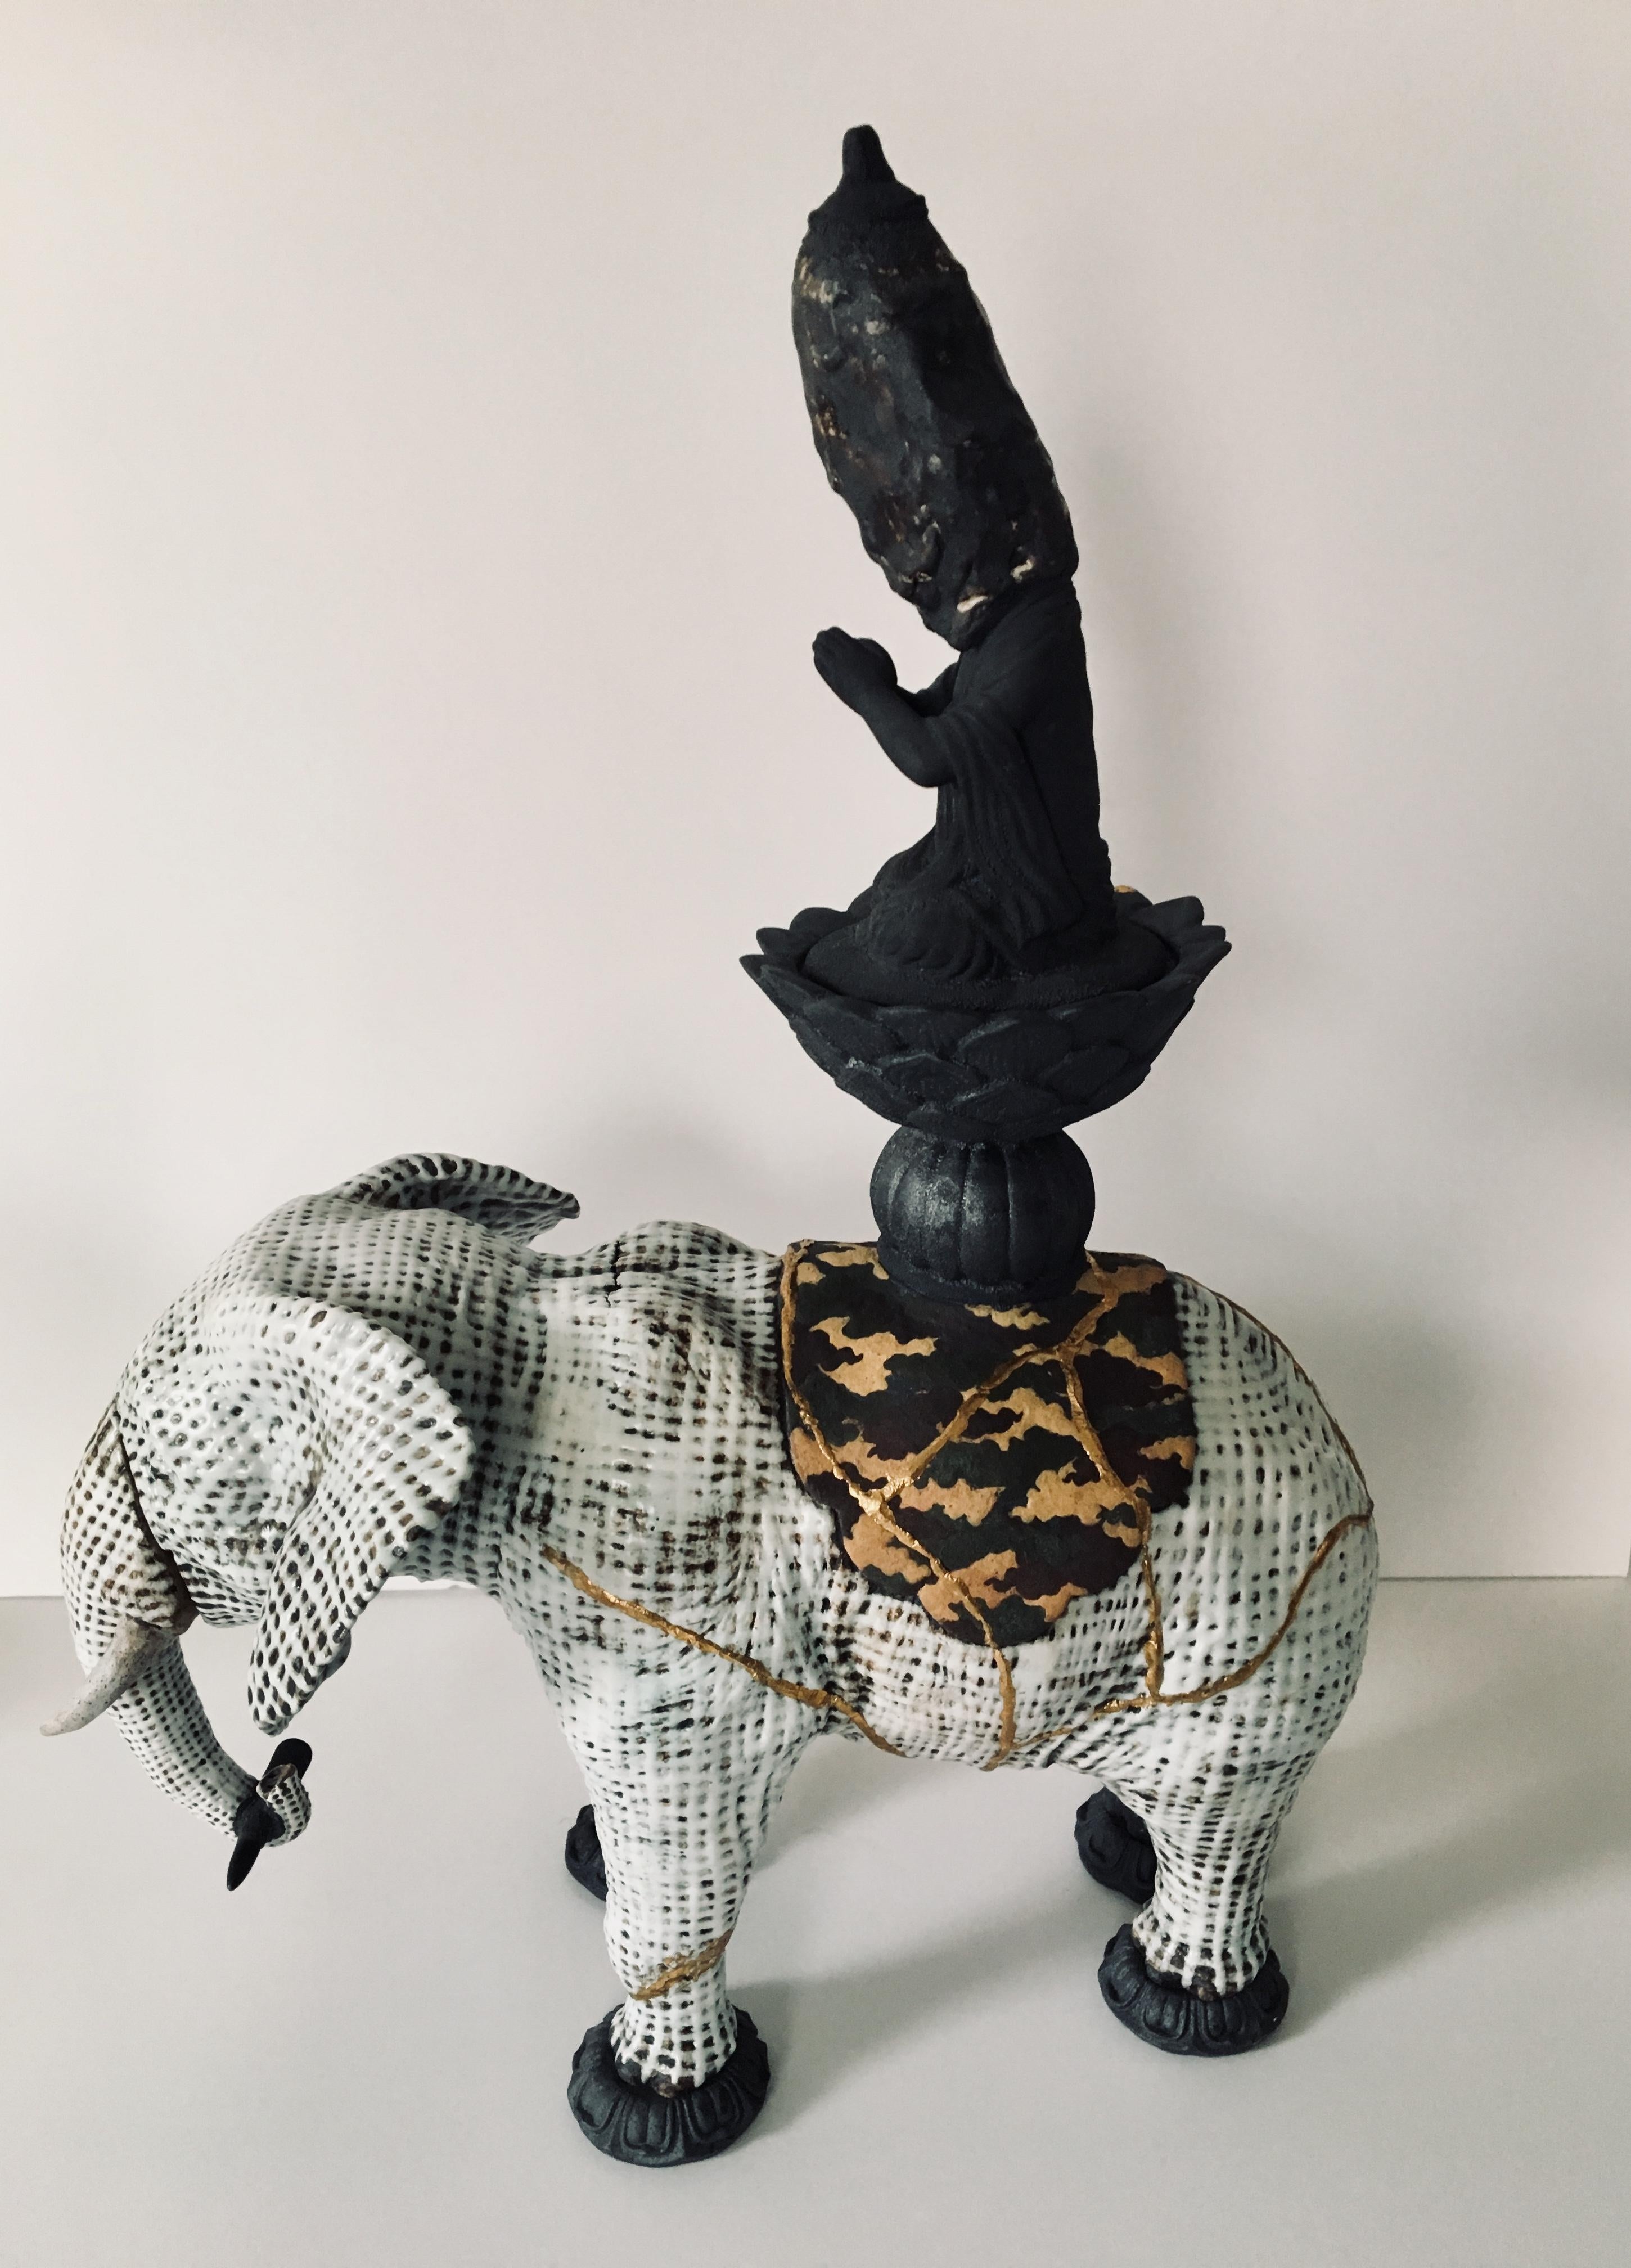 Keramik-Skulptur eines Elefanten: Samantabhadra (Sanskirt für Universal Worthy)